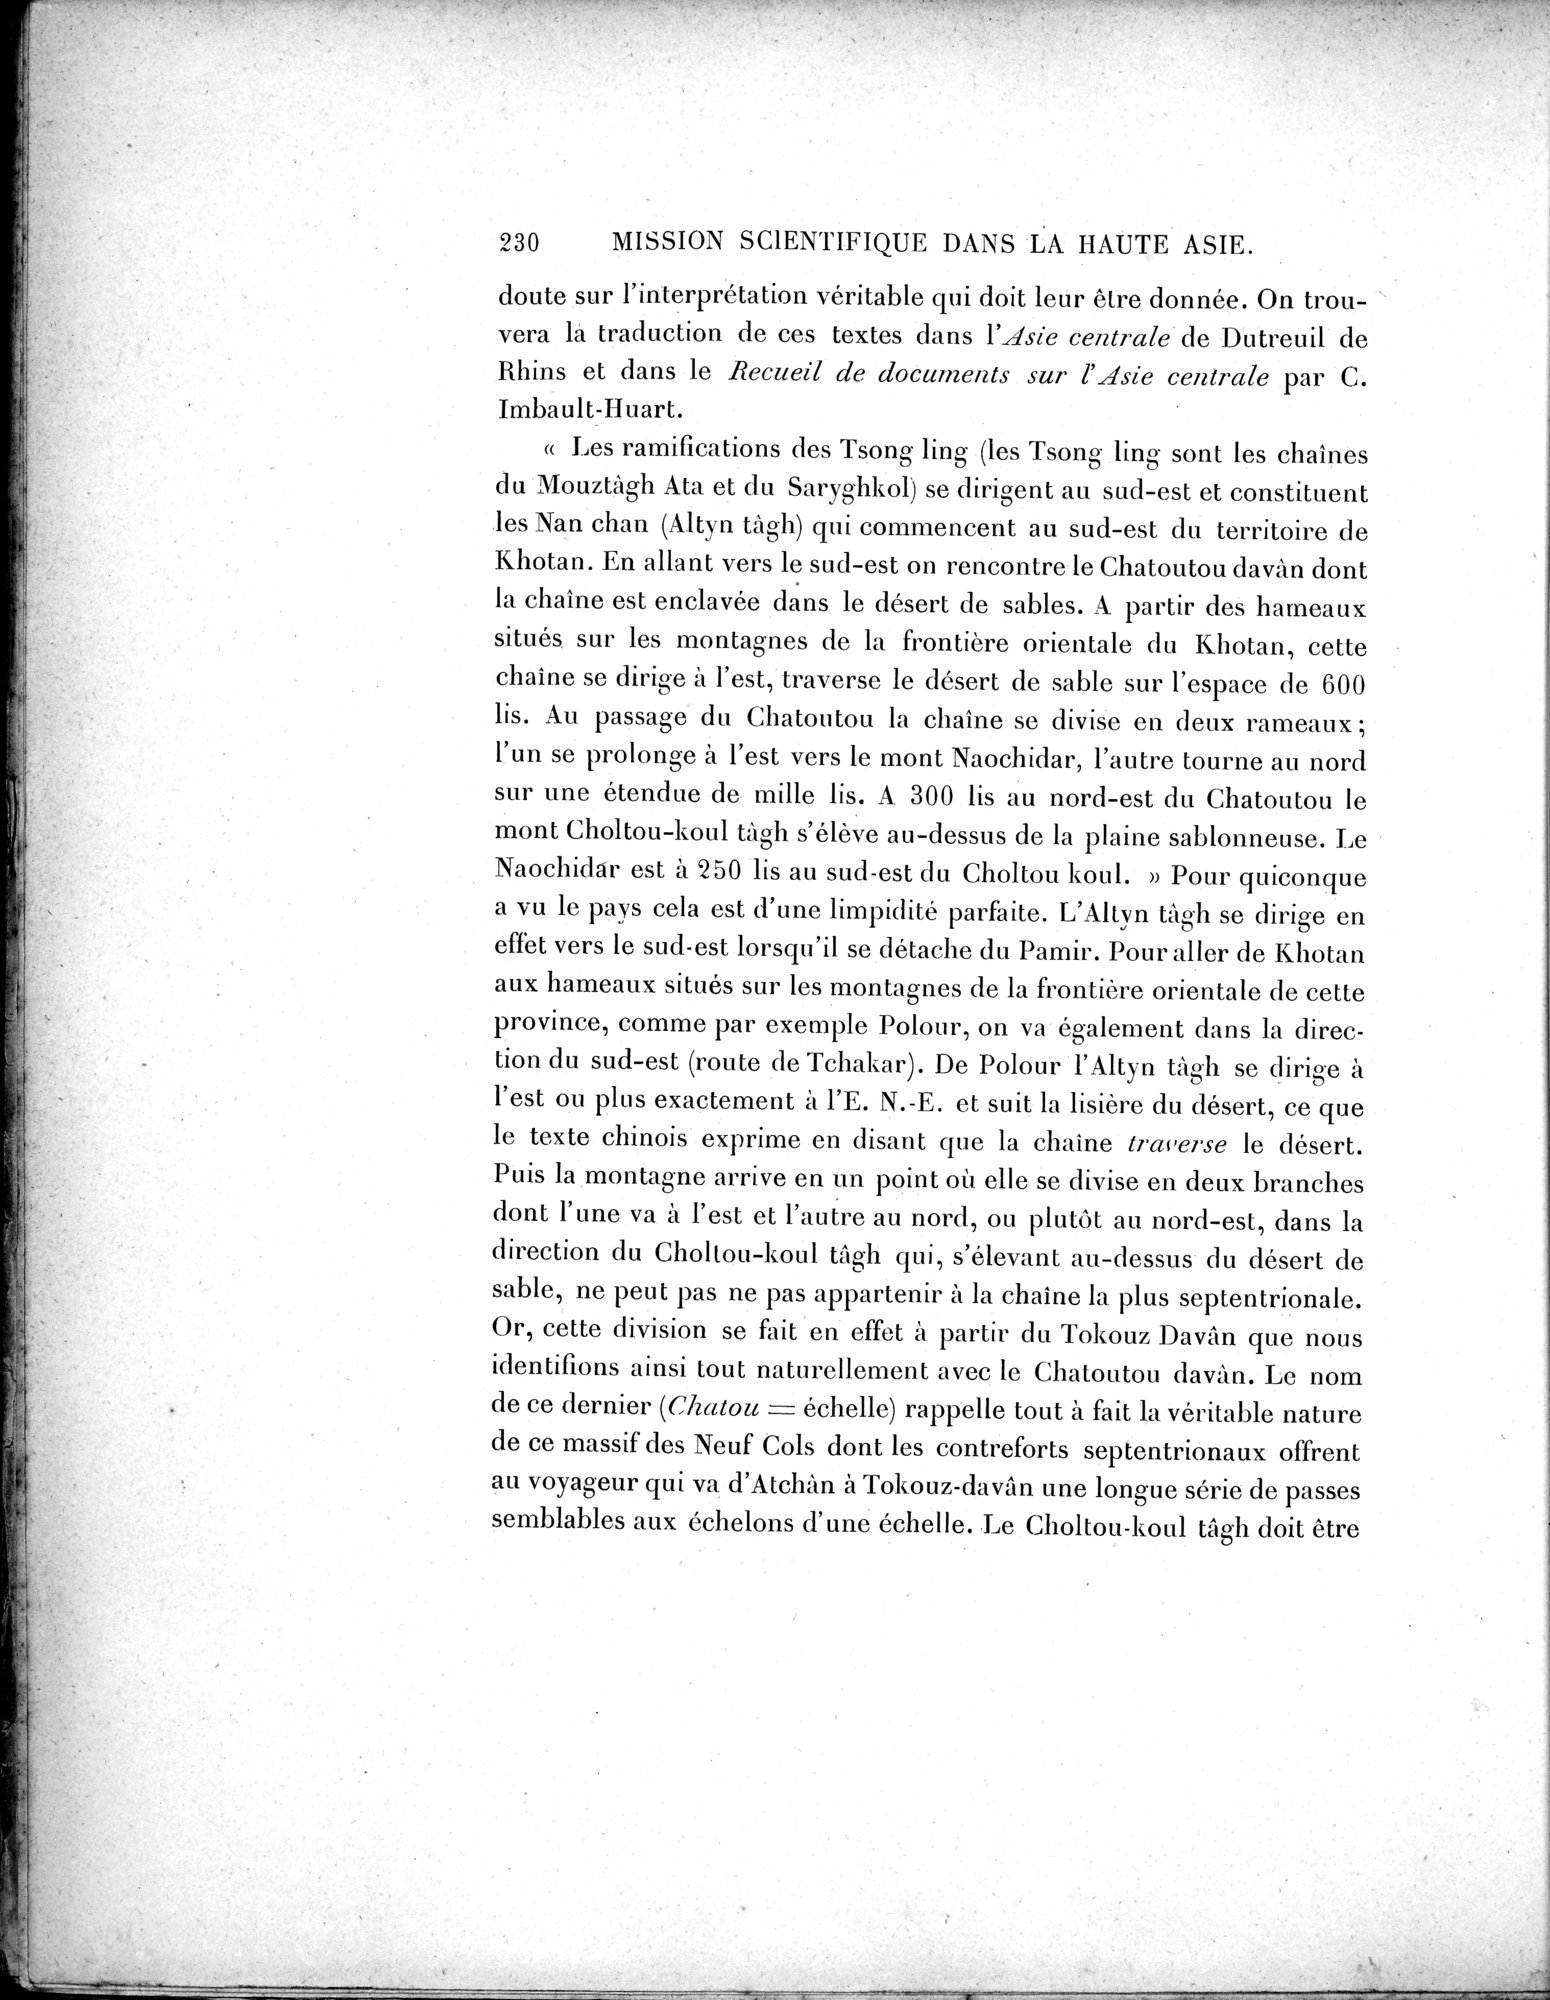 Mission Scientifique dans la Haute Asie 1890-1895 : vol.3 / Page 248 (Grayscale High Resolution Image)